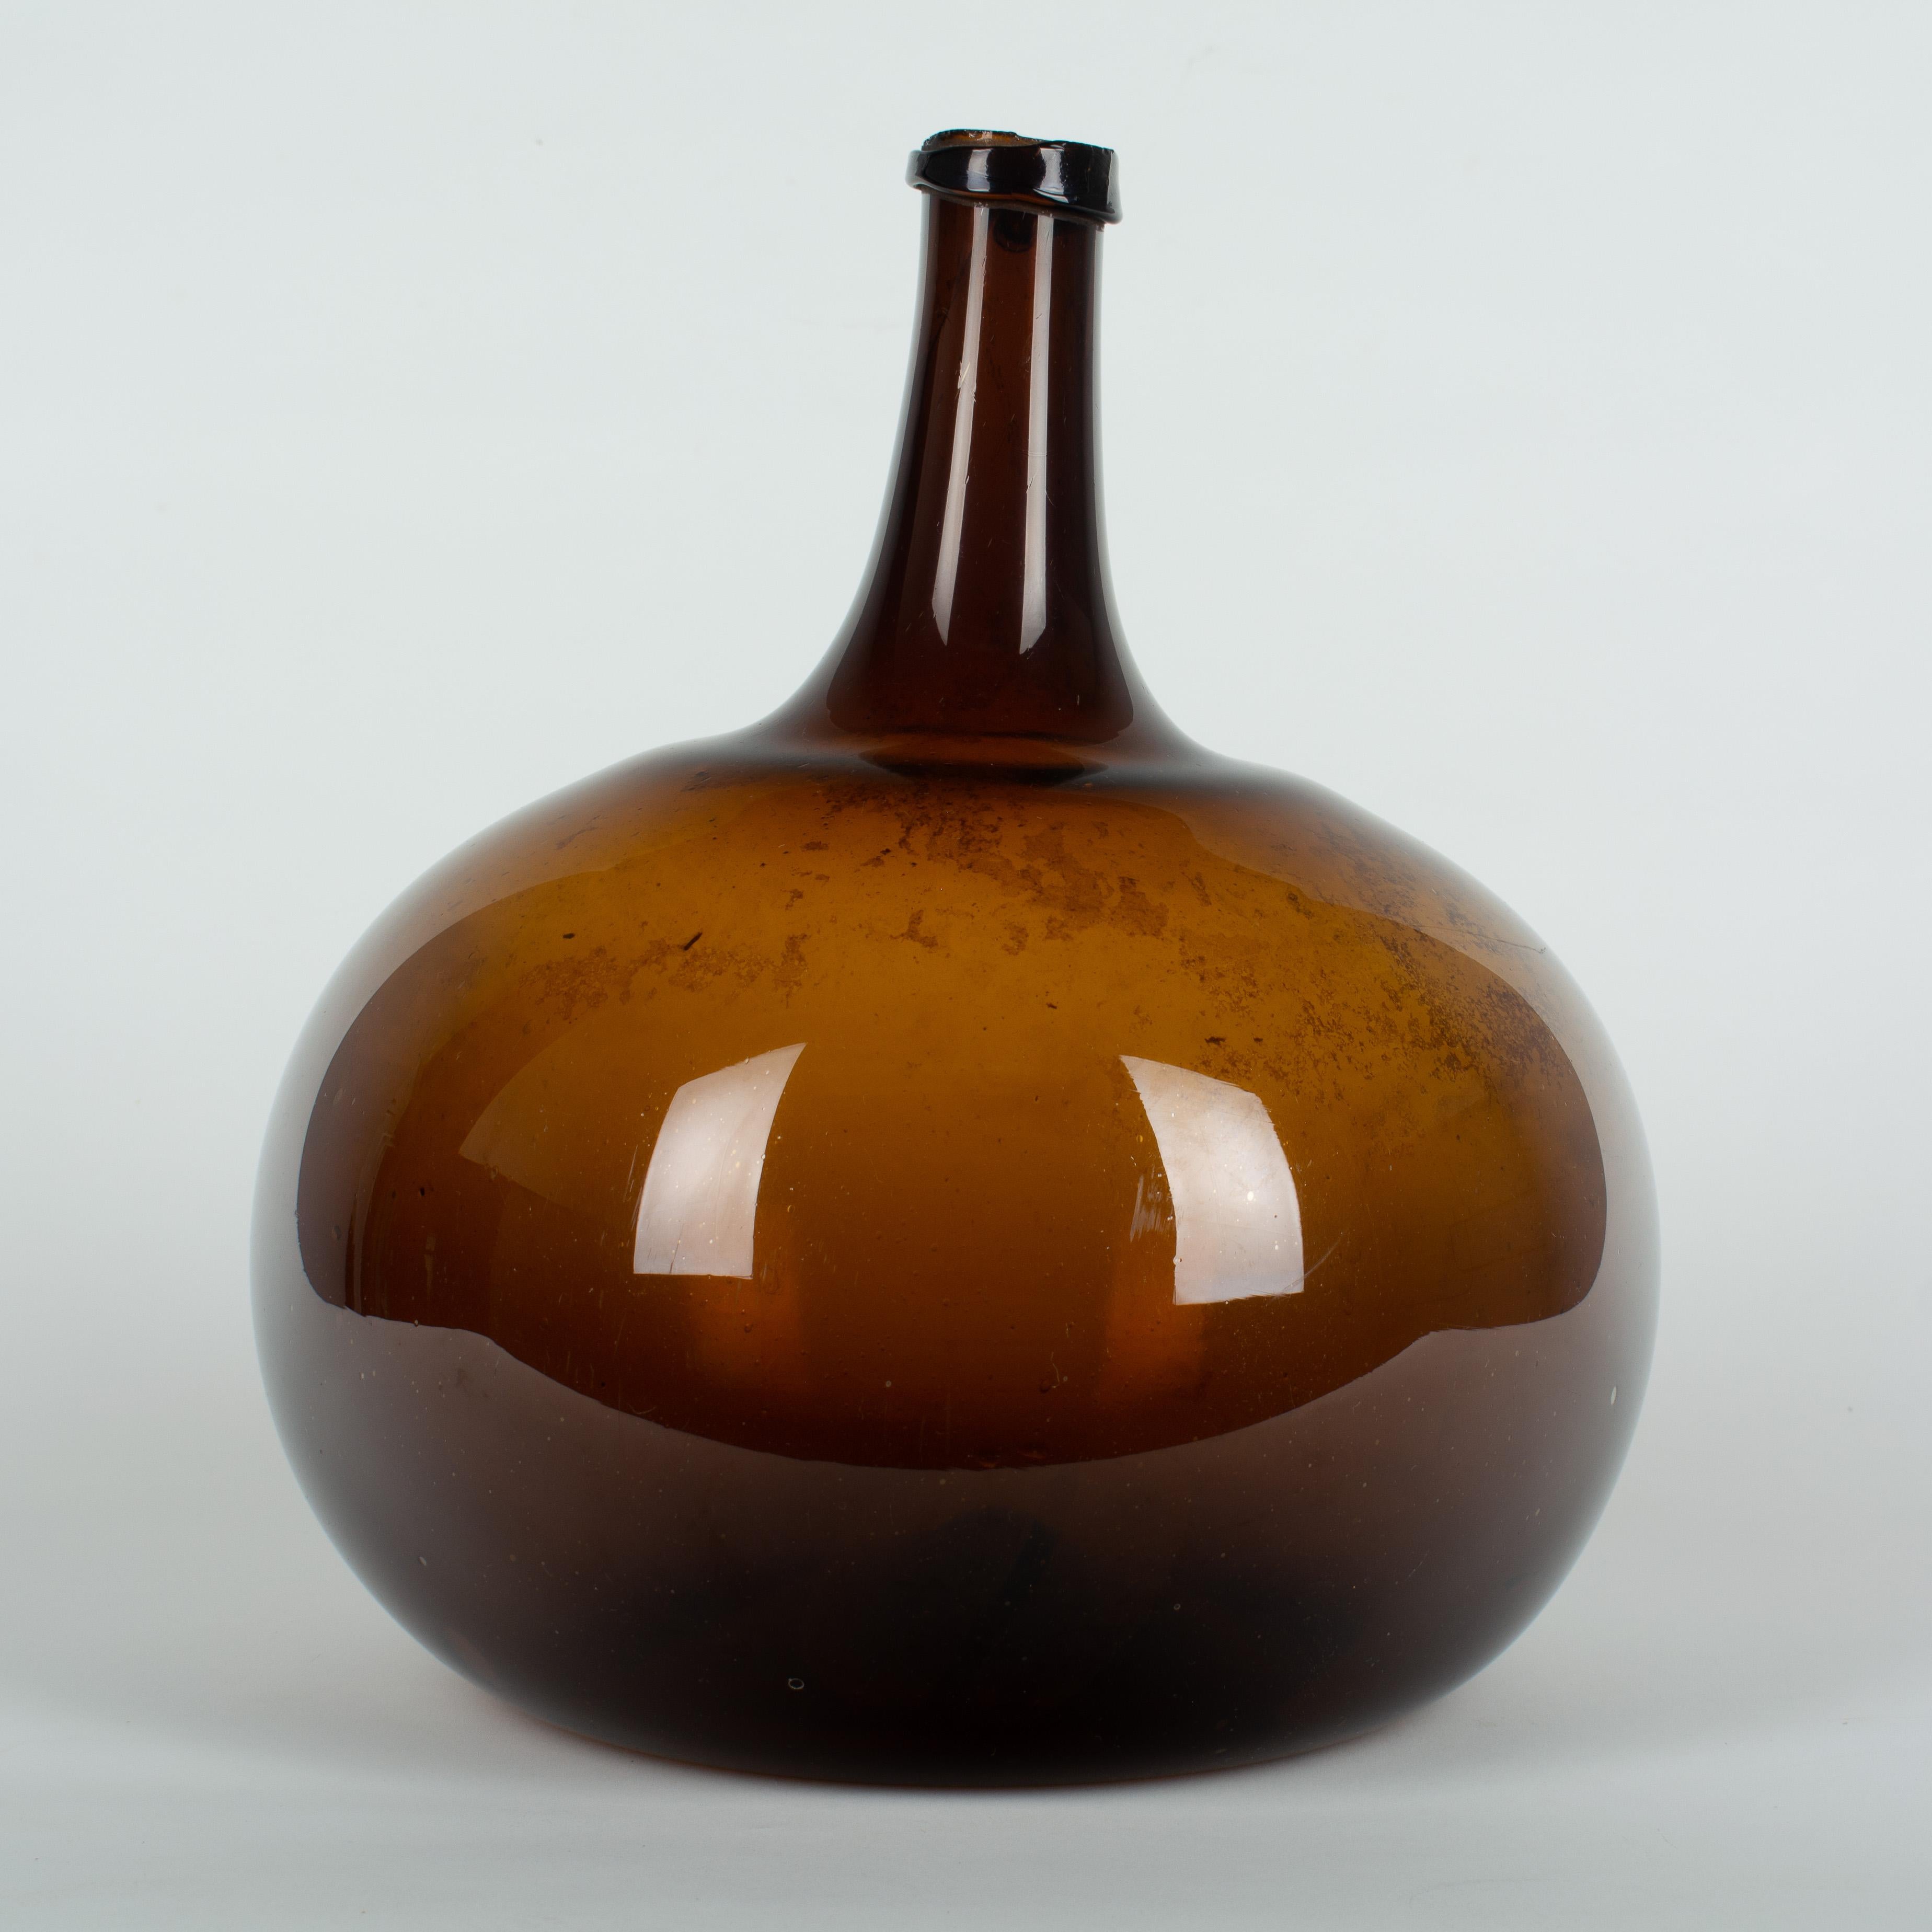 19th Century French Blown Glass Demijohn Bottle (Französisch)